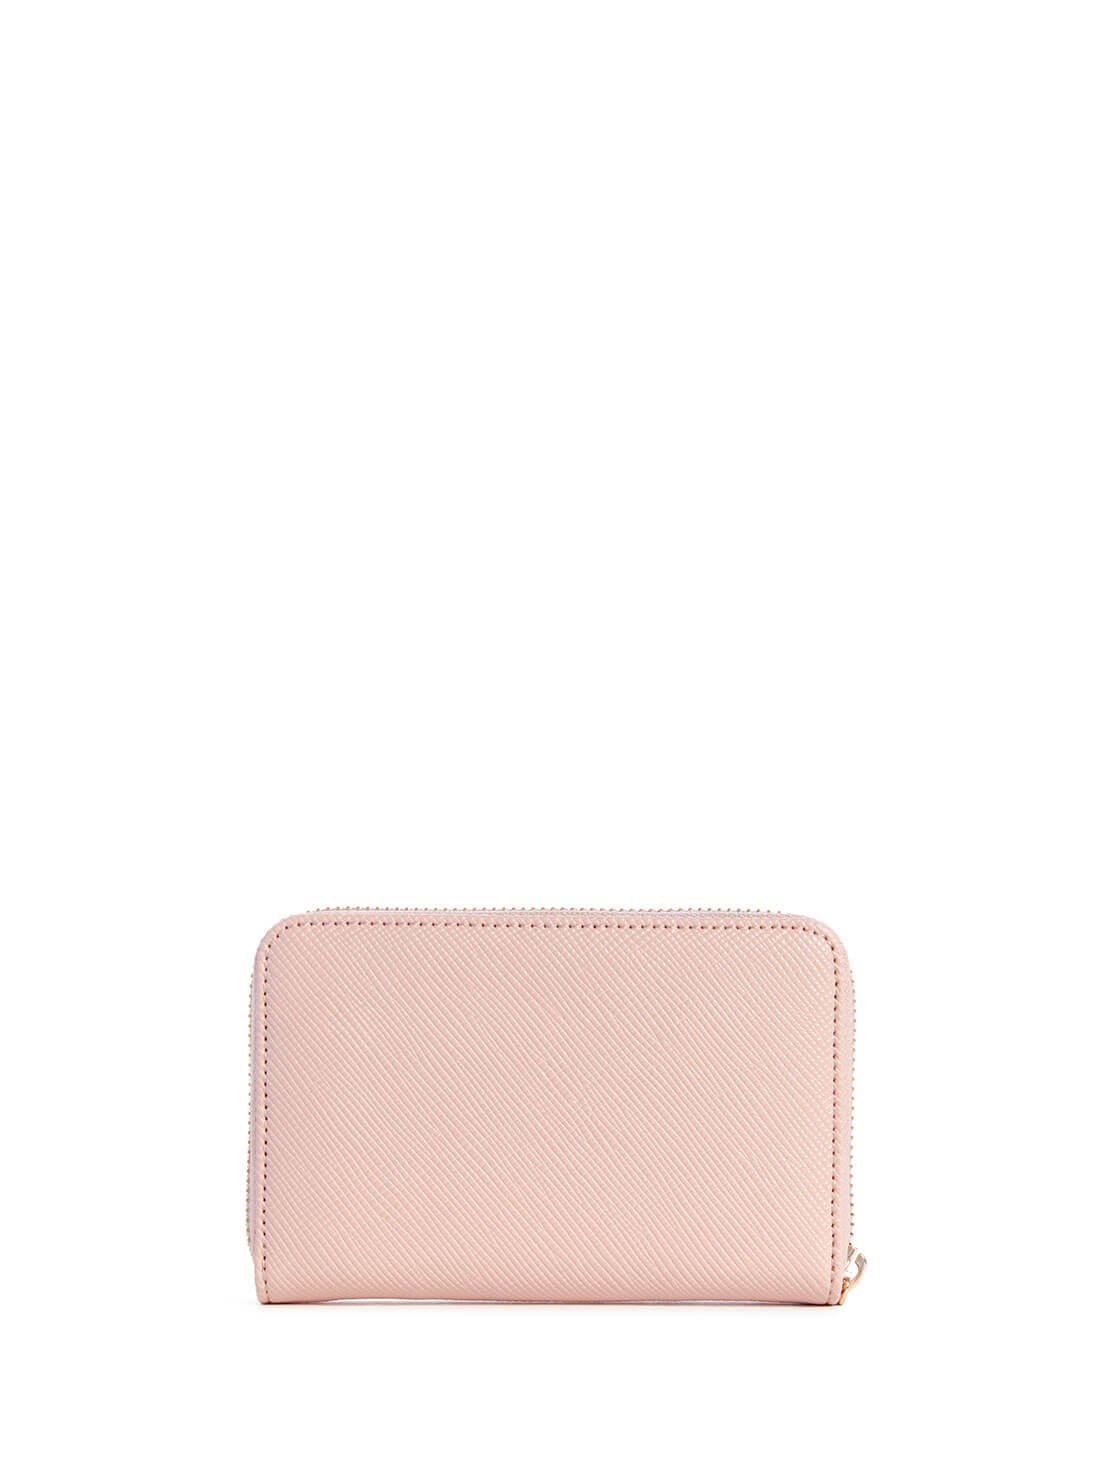 Women's Blush Pink Brynlee Medium Wallet back view